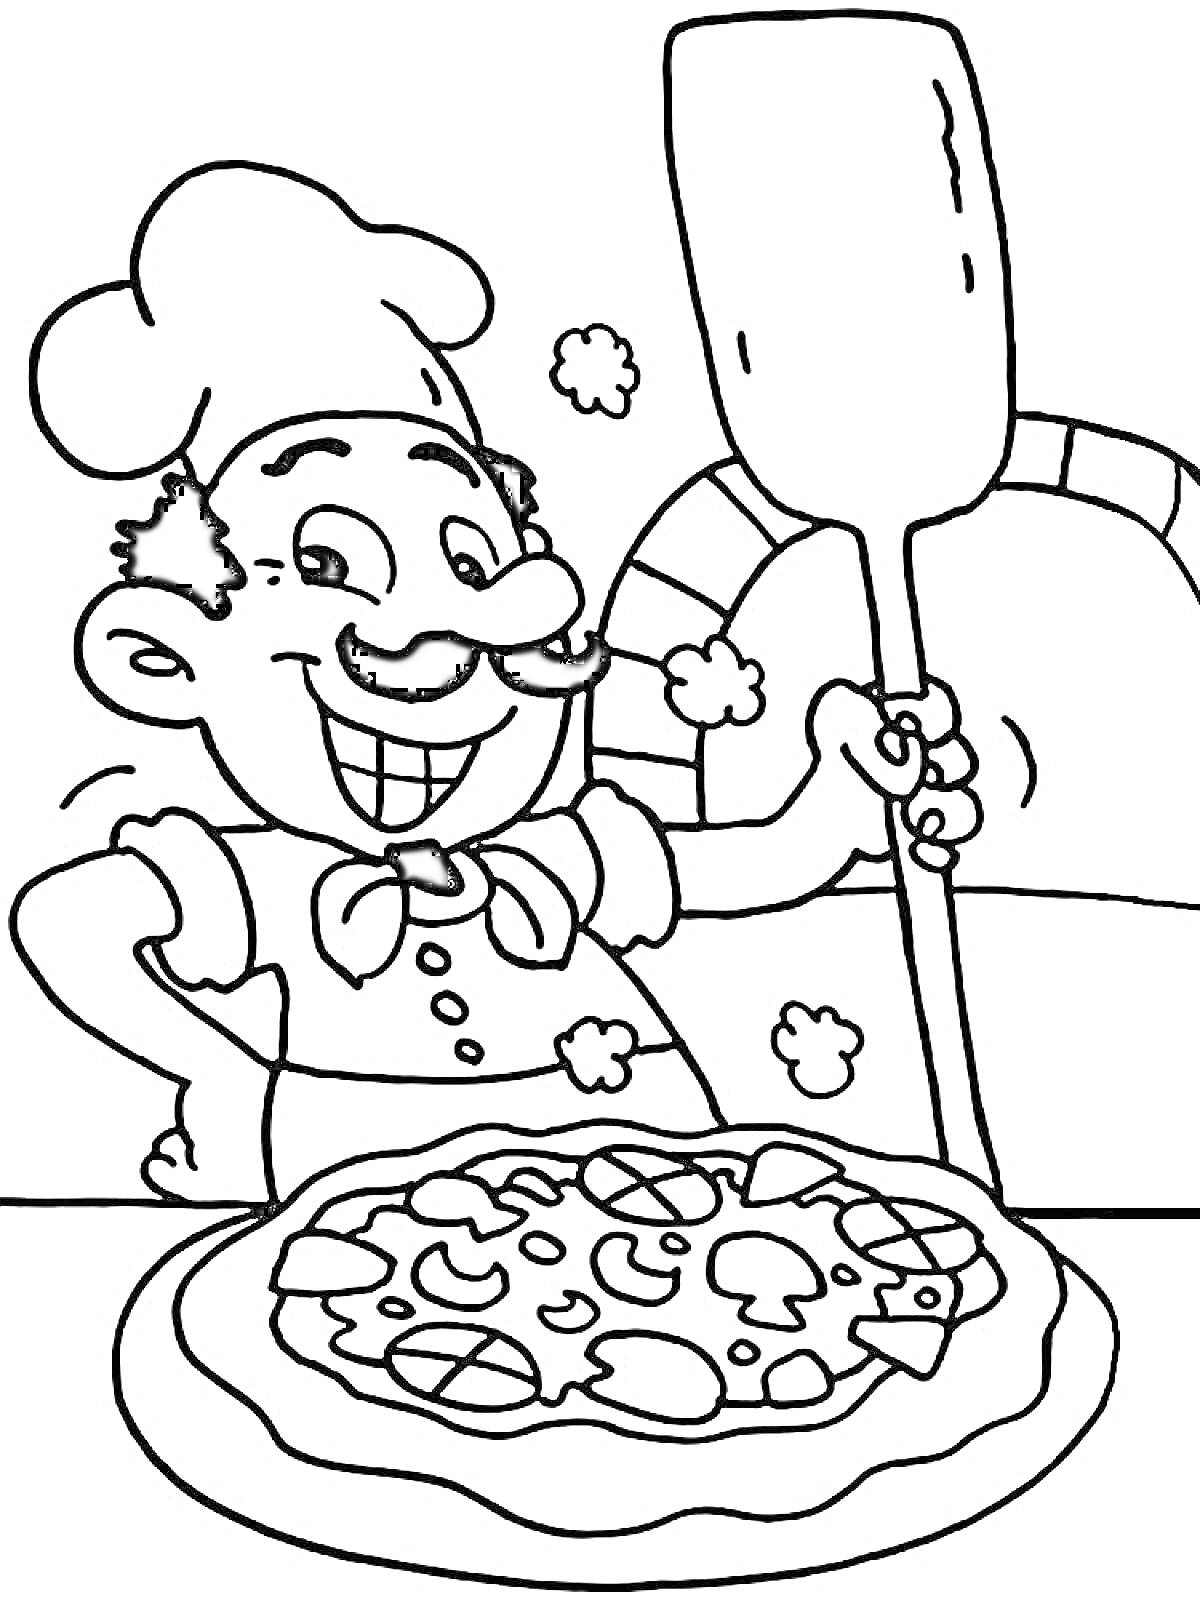 Раскраска Повар улыбается и держит лопату для пиццы возле печи с готовой пиццей на переднем плане